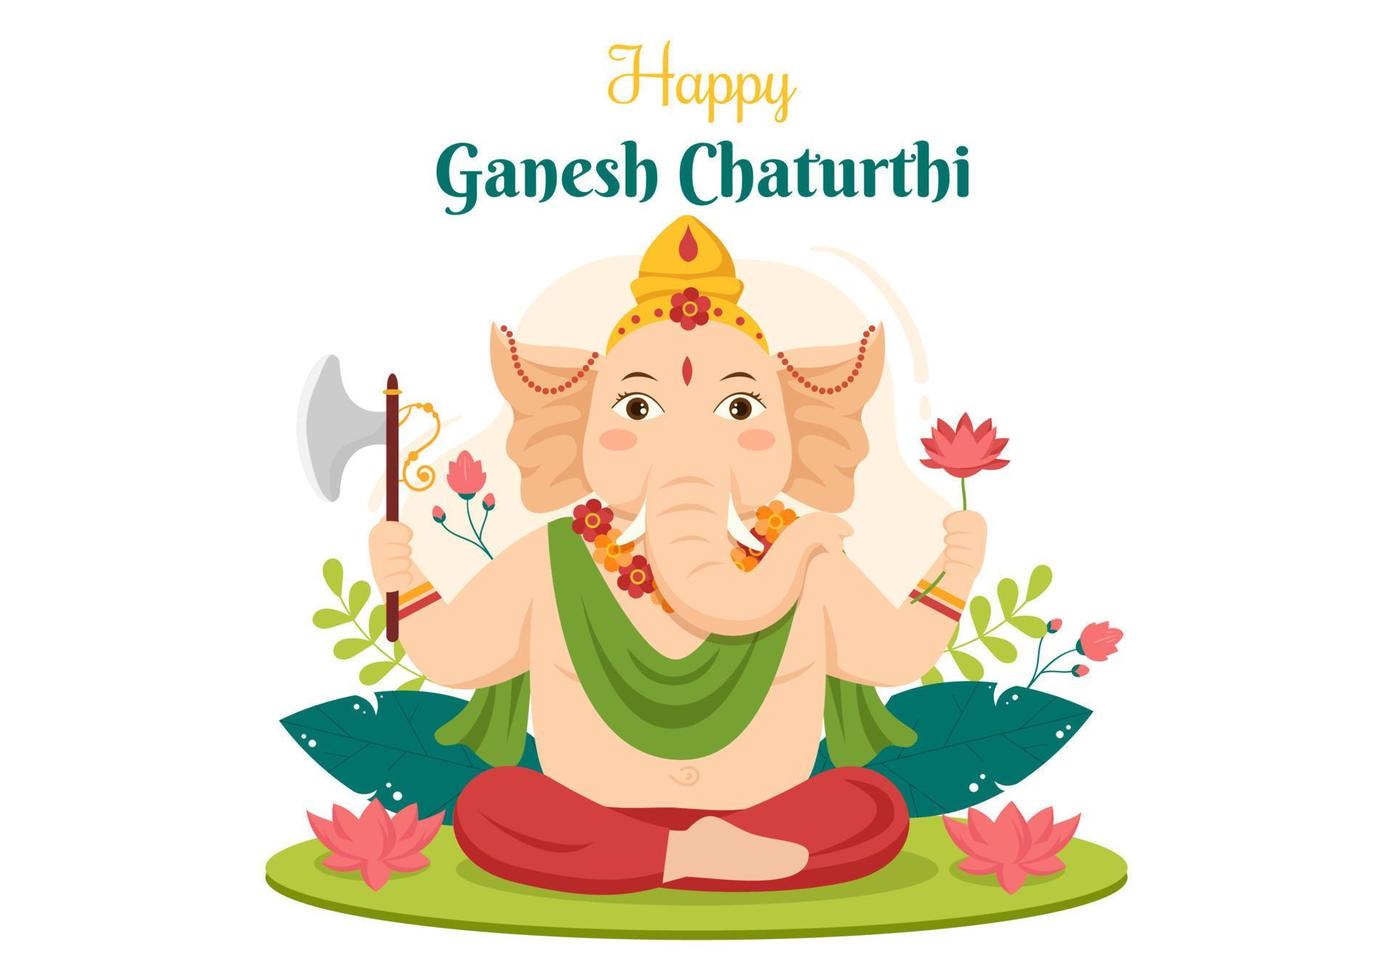 felice ganesh chaturthi del festival in india per celebrare il suo arrivo sulla terra in un'illustrazione vettoriale di sfondo stile piatto